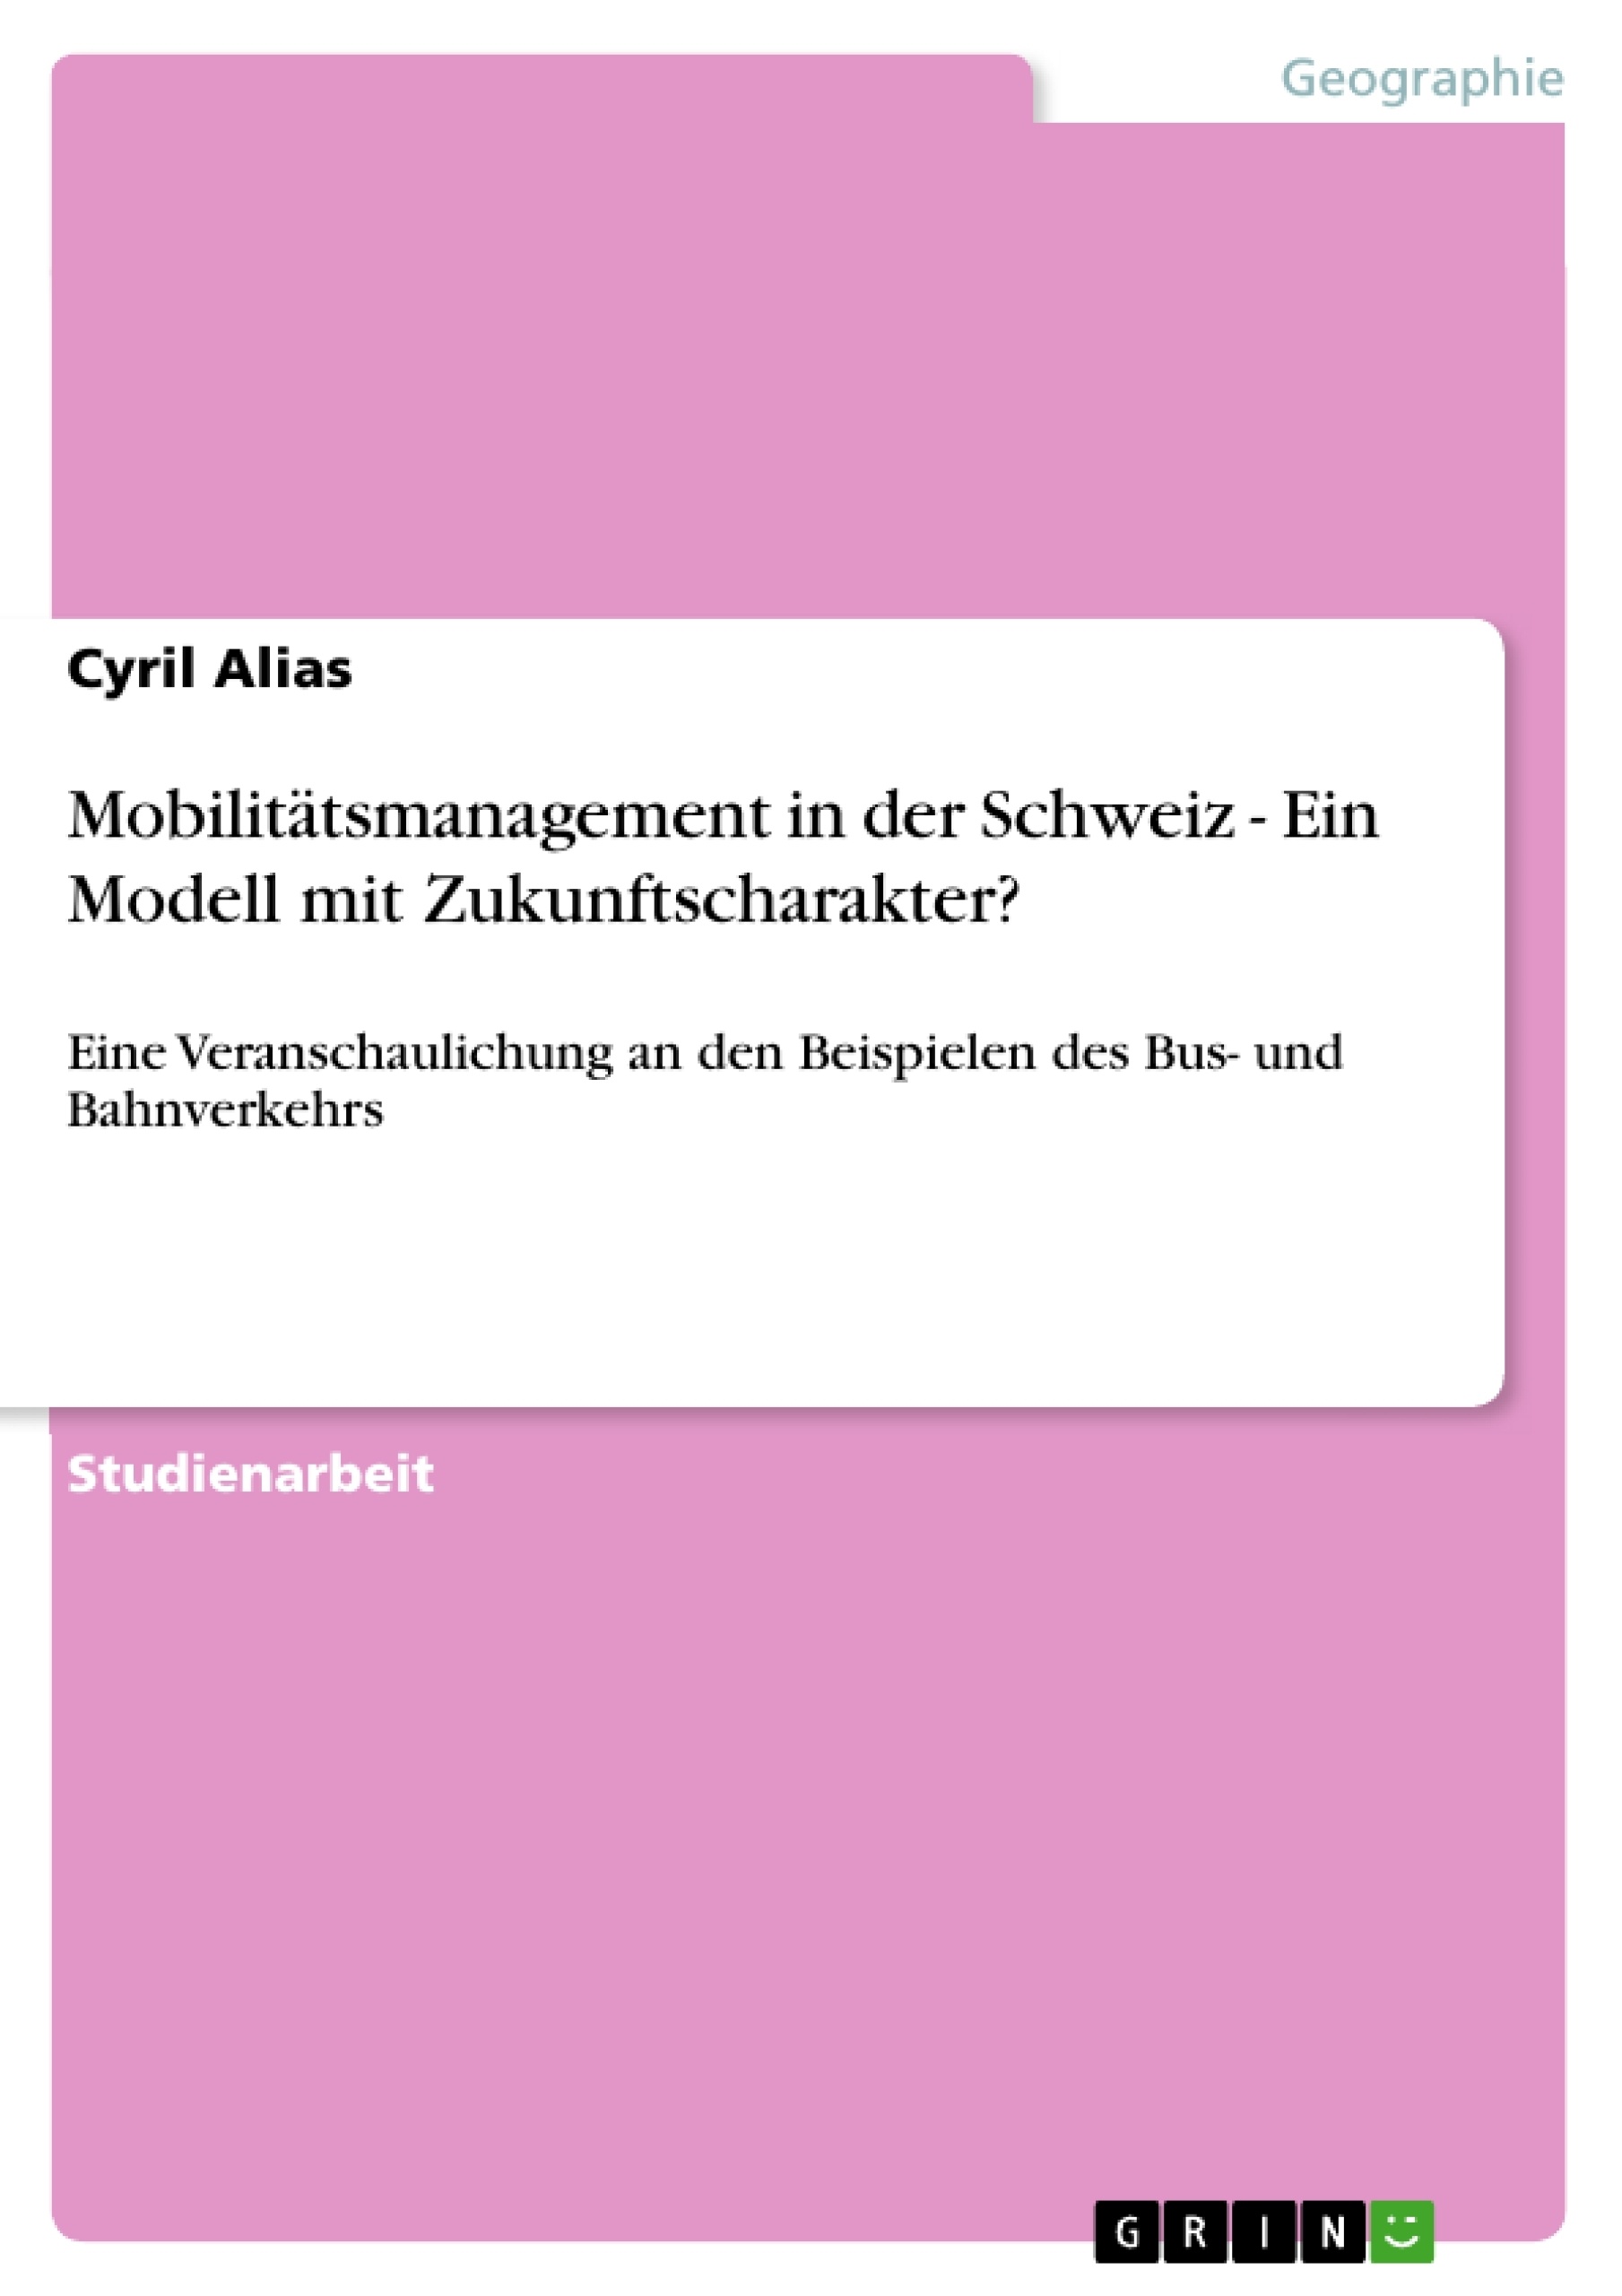 Titre: Mobilitätsmanagement in der Schweiz - Ein Modell mit Zukunftscharakter?